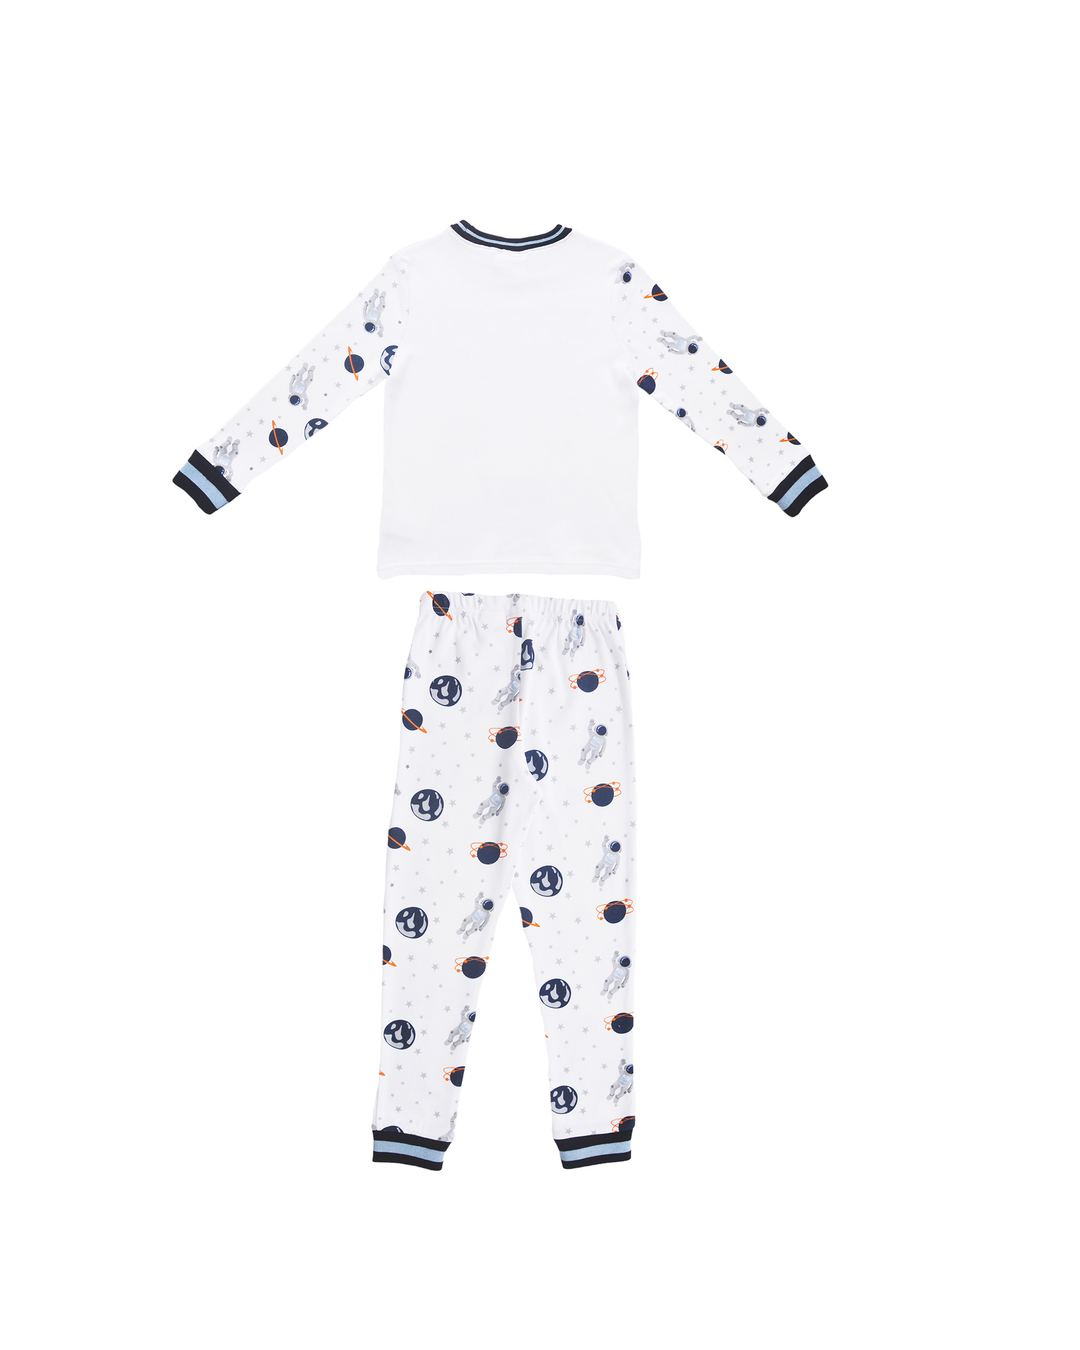 Pijama blanca manga larga con estampado de astronautas y naves